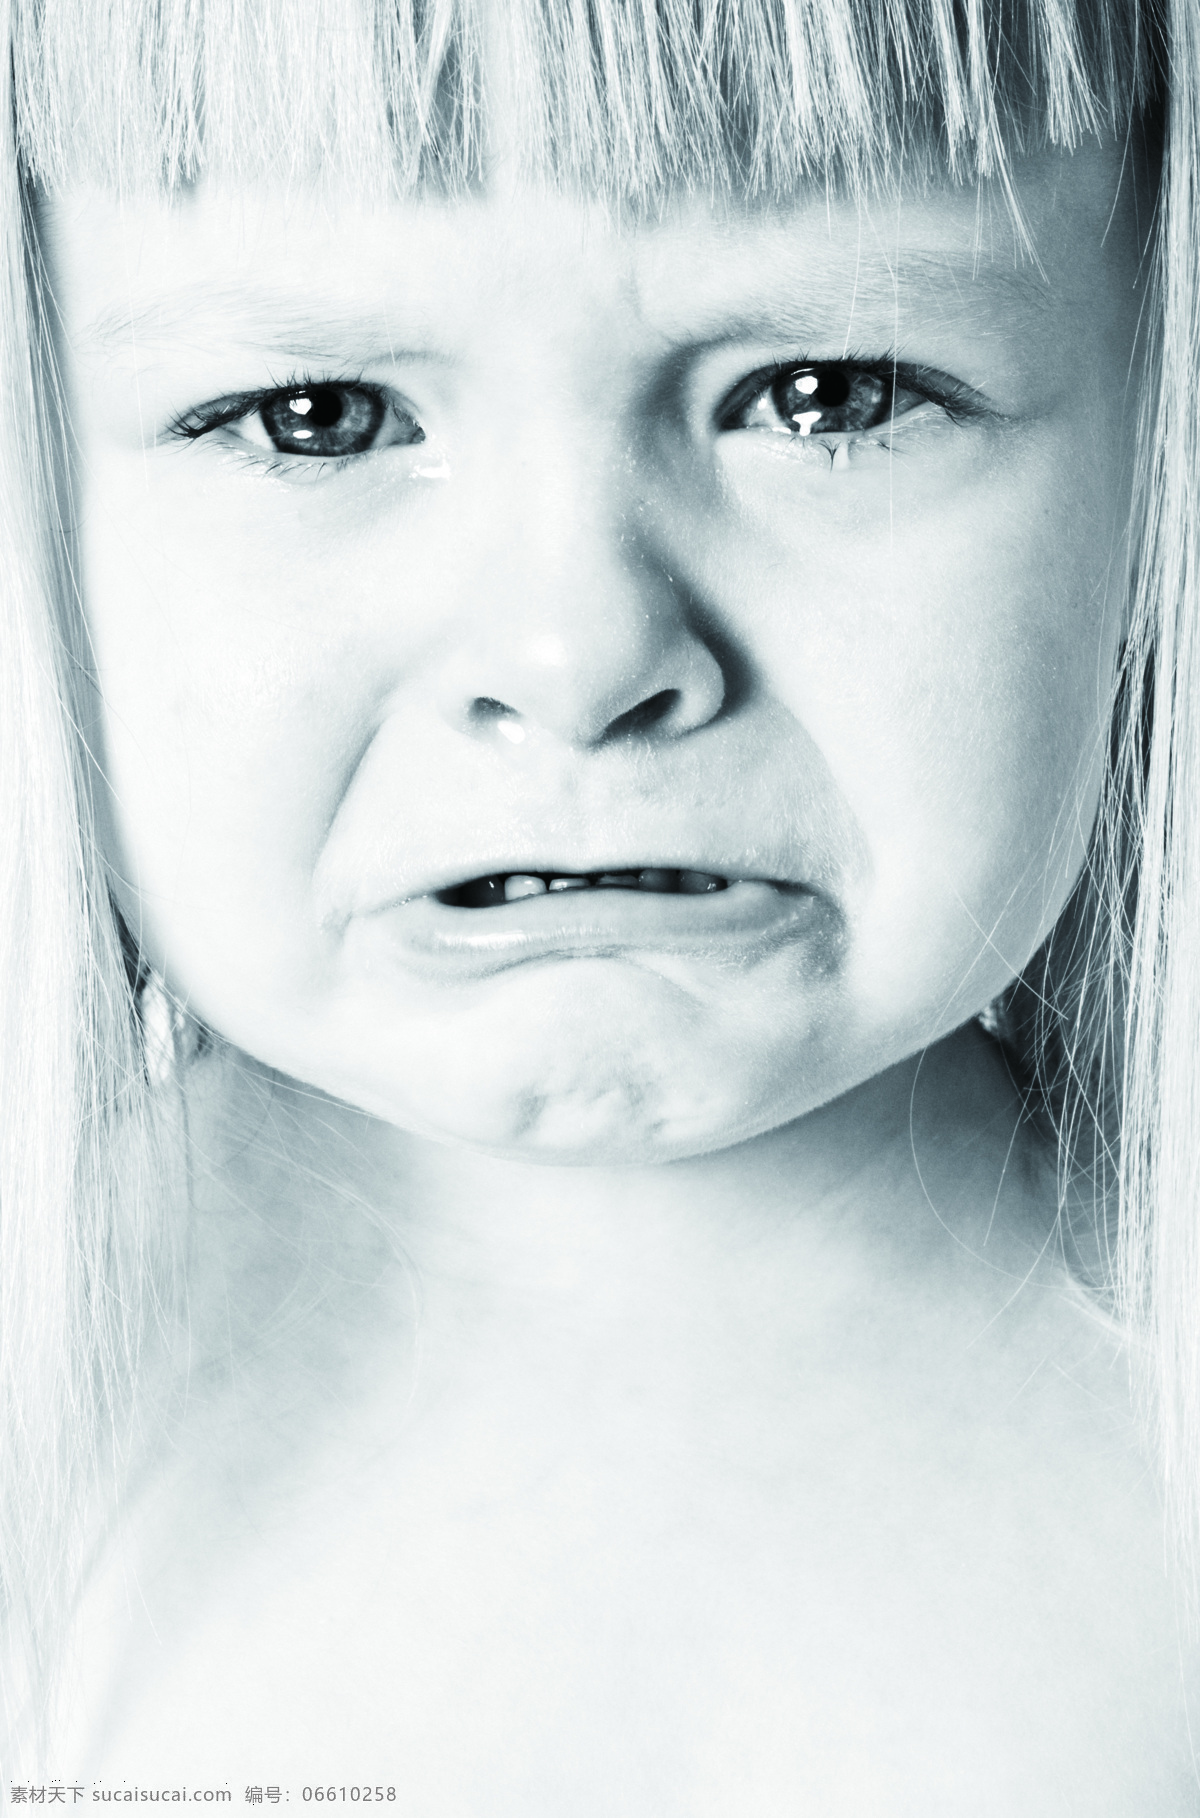 哭泣的女孩 哭 女孩 哭泣 可怜 怜爱 儿童幼儿 人物图库